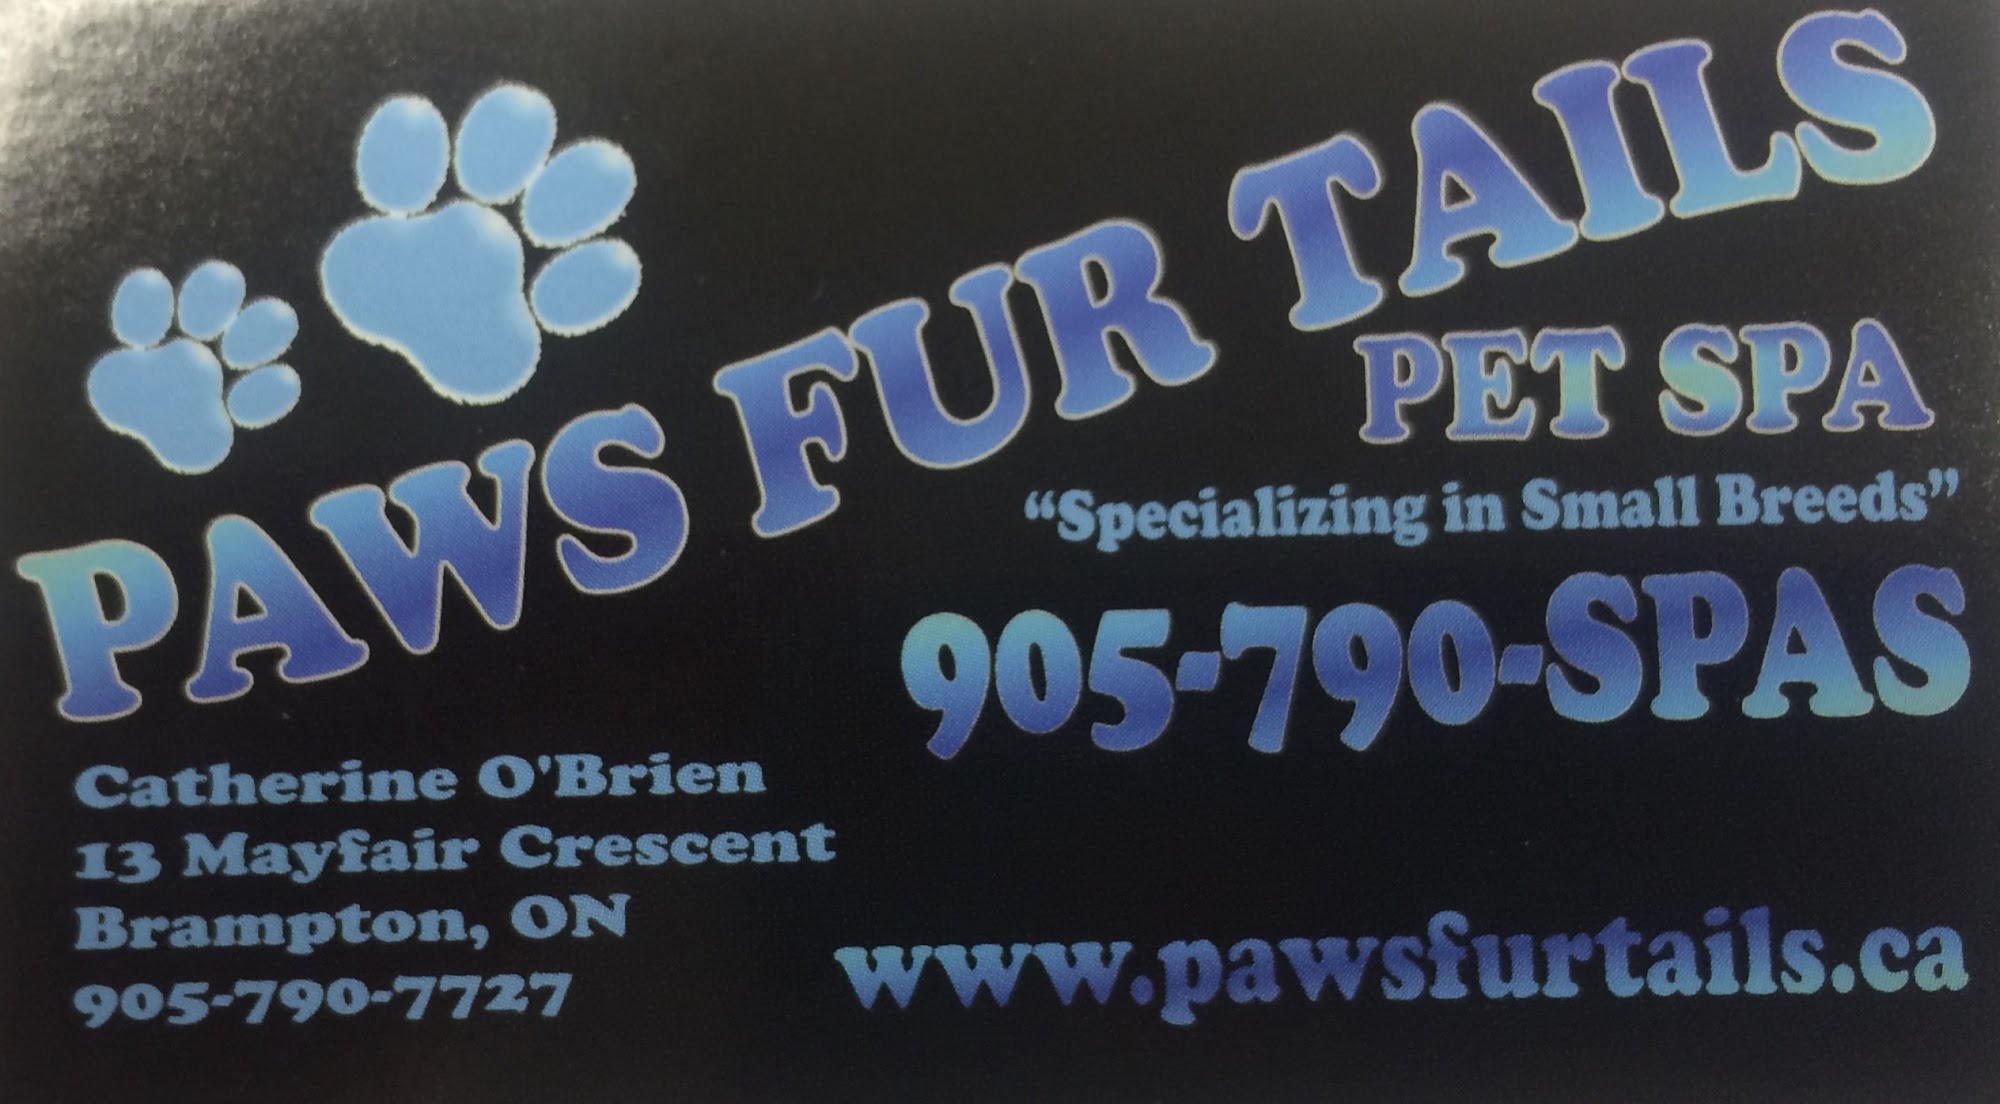 Paws Fur Tails Pet Spa